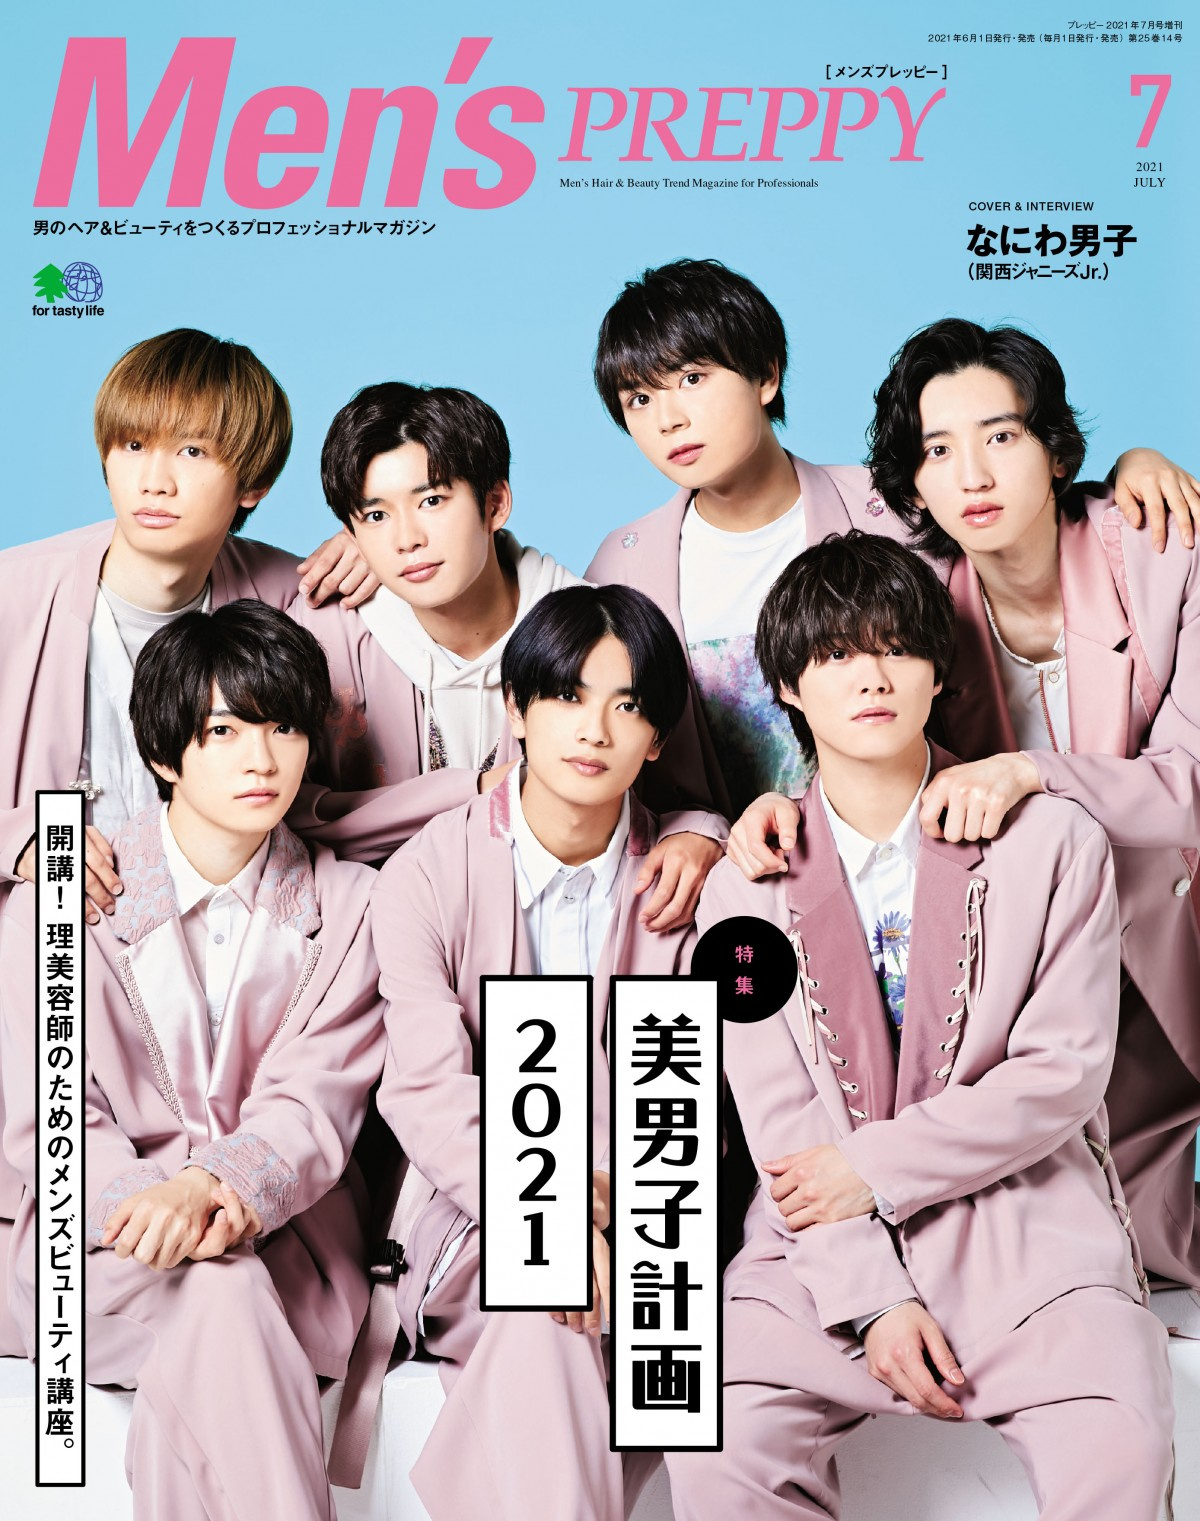 なにわ男子 ヘアメイク知識やこだわりを披露 Men Spreppy 美男子計画 特集で表紙 Oricon News